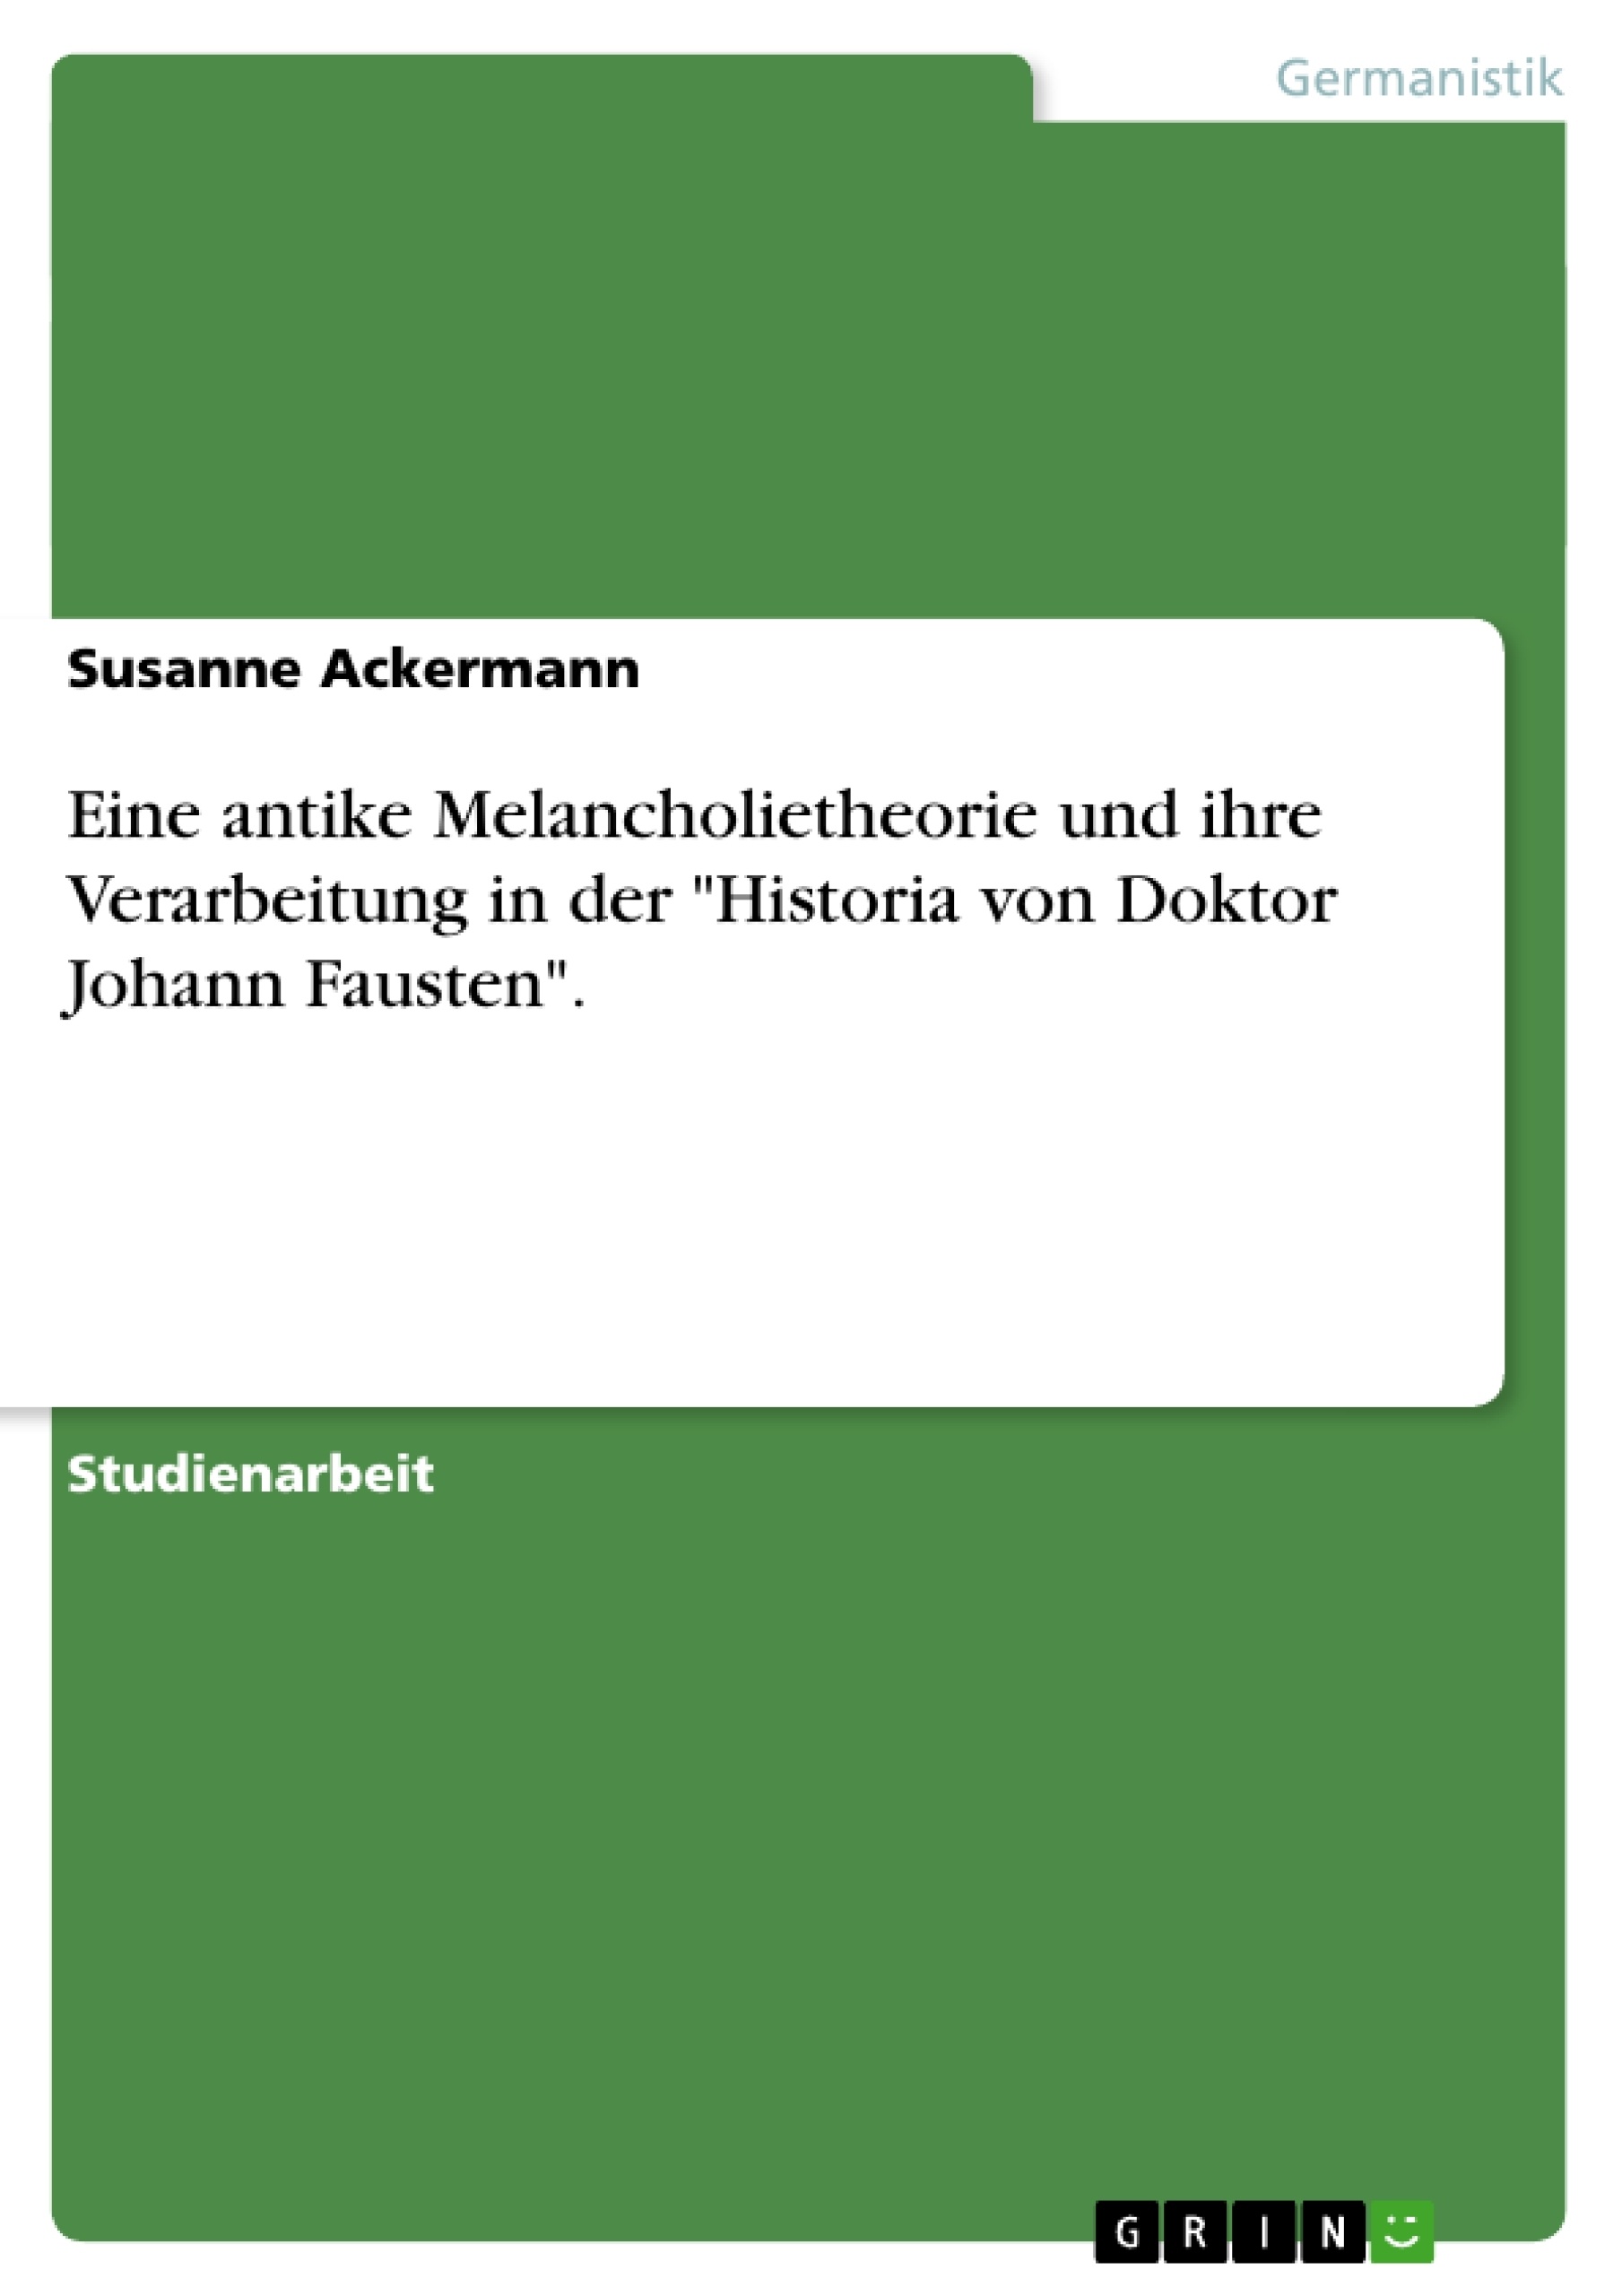 Titel: Eine antike Melancholietheorie und ihre Verarbeitung in der "Historia von Doktor Johann Fausten".